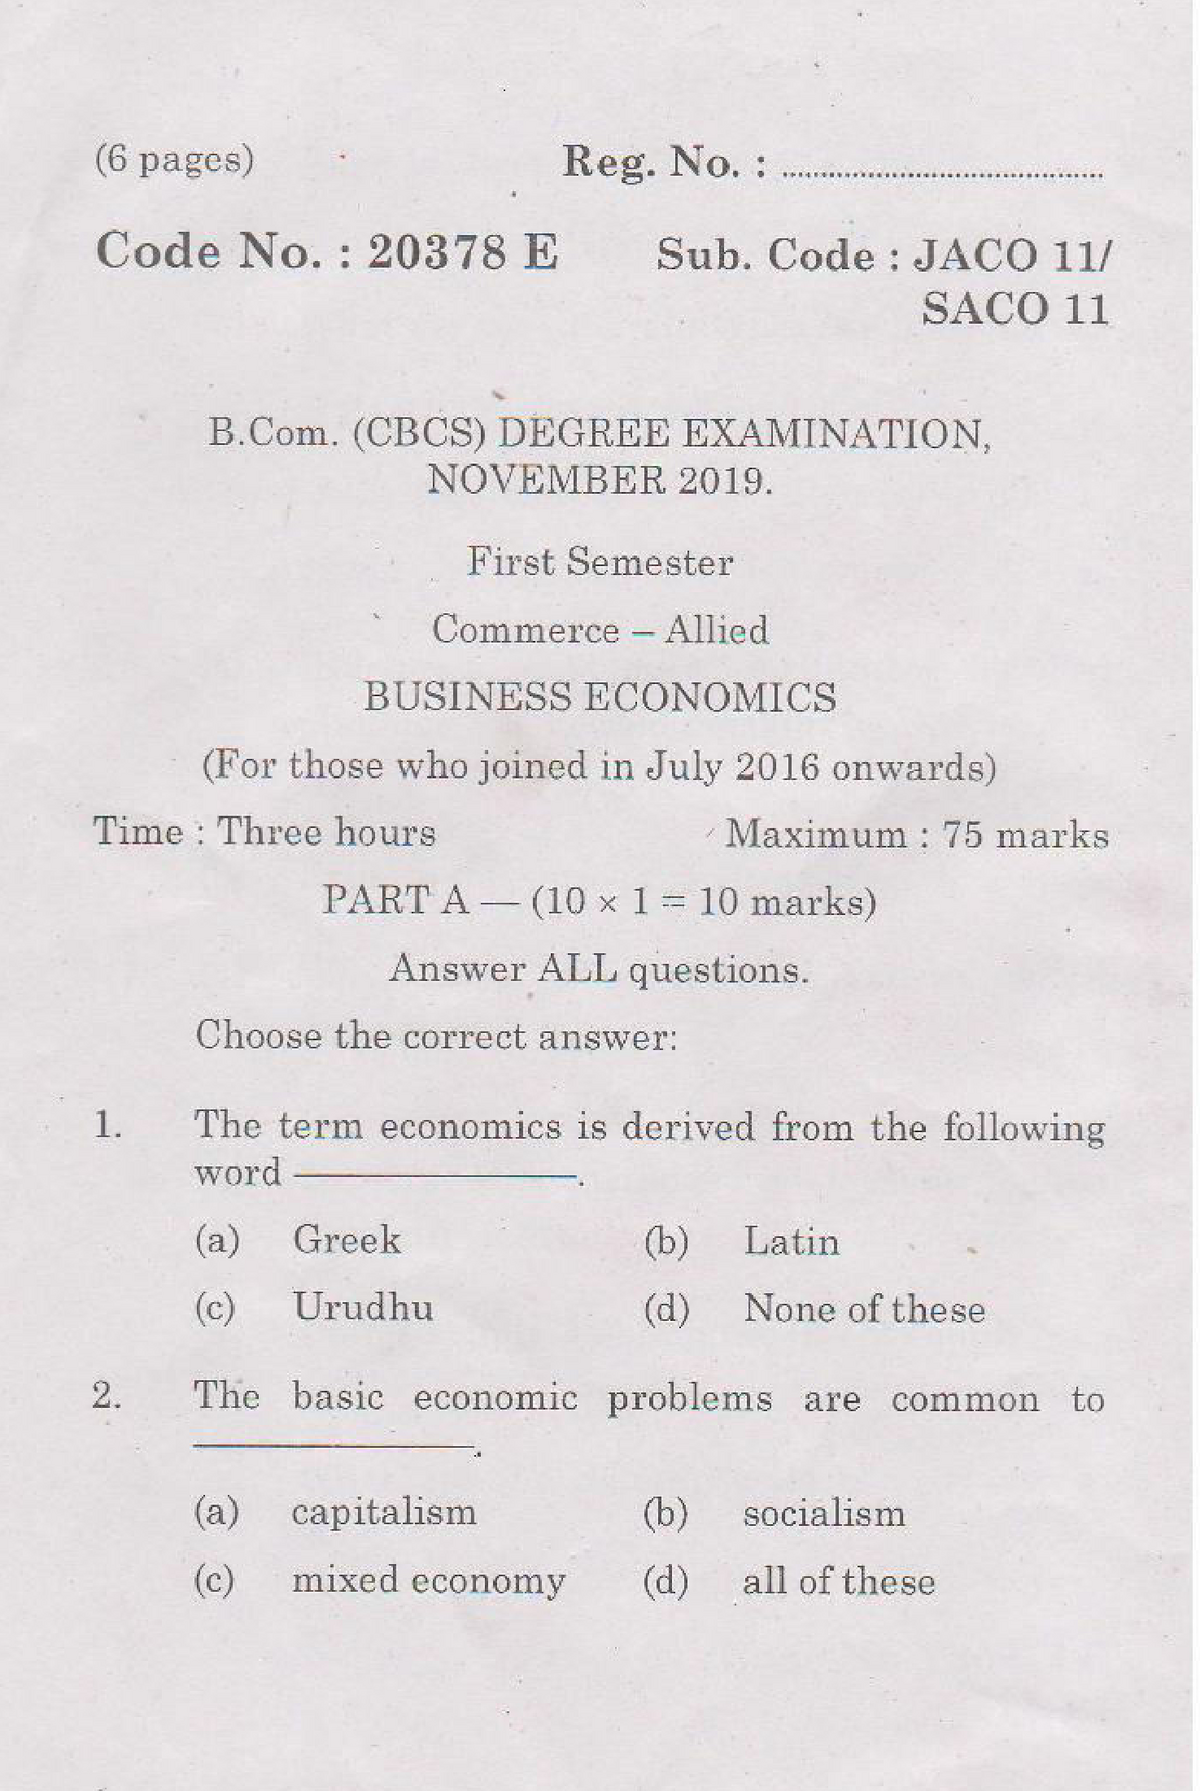 mba economics assignment